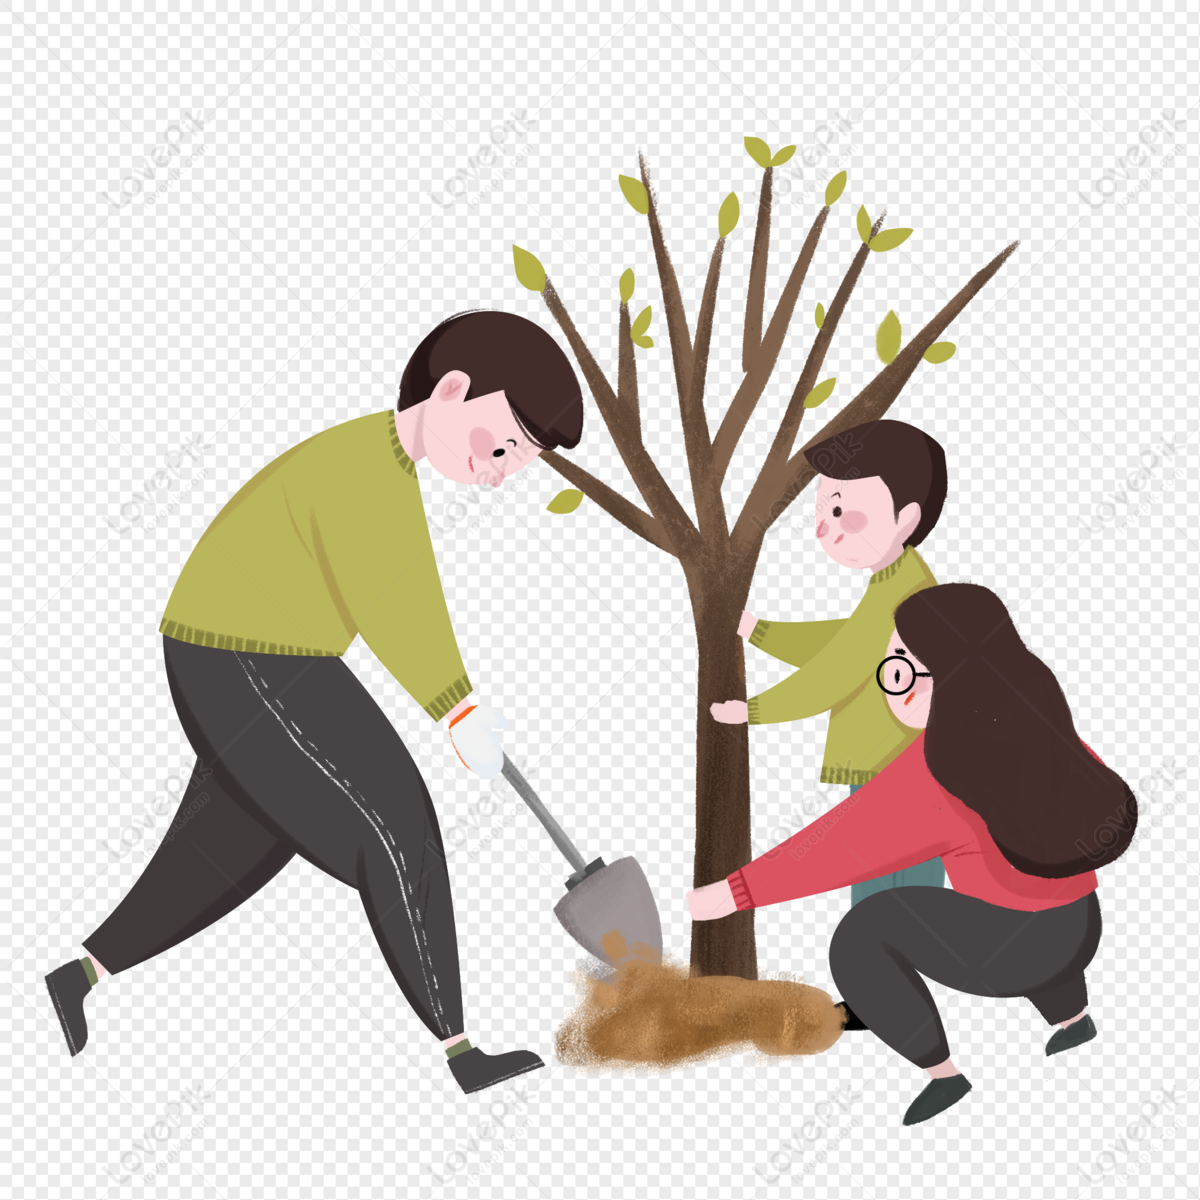 Семьи посадили деревья. Семья сажает дерево. Посадка деревьев с семьей. Посадка деревьев иллюстрация. Иллюстрации семья сажает дерево.